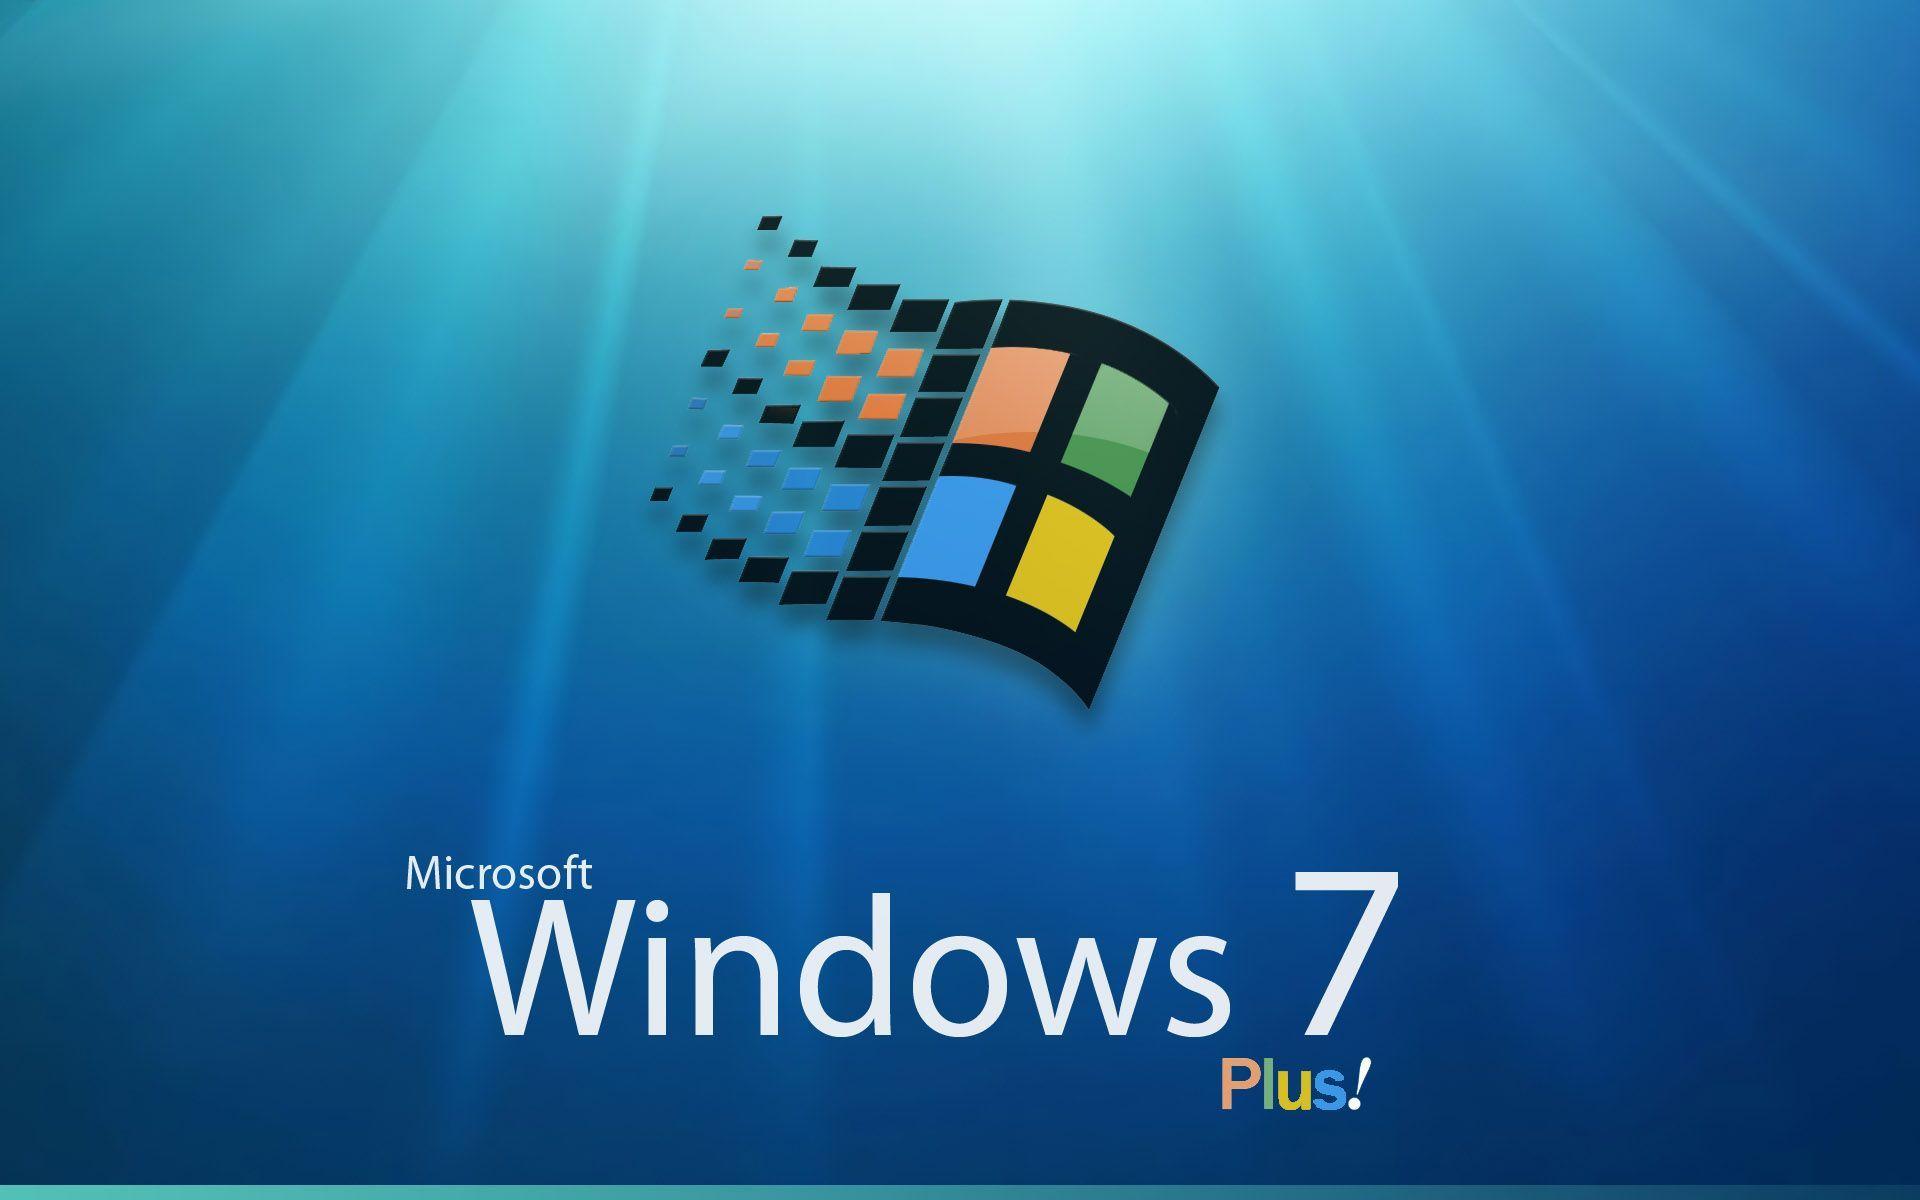 Desktop Wallpaper · Gallery · Windows 7 · Windows 98 Style. Free